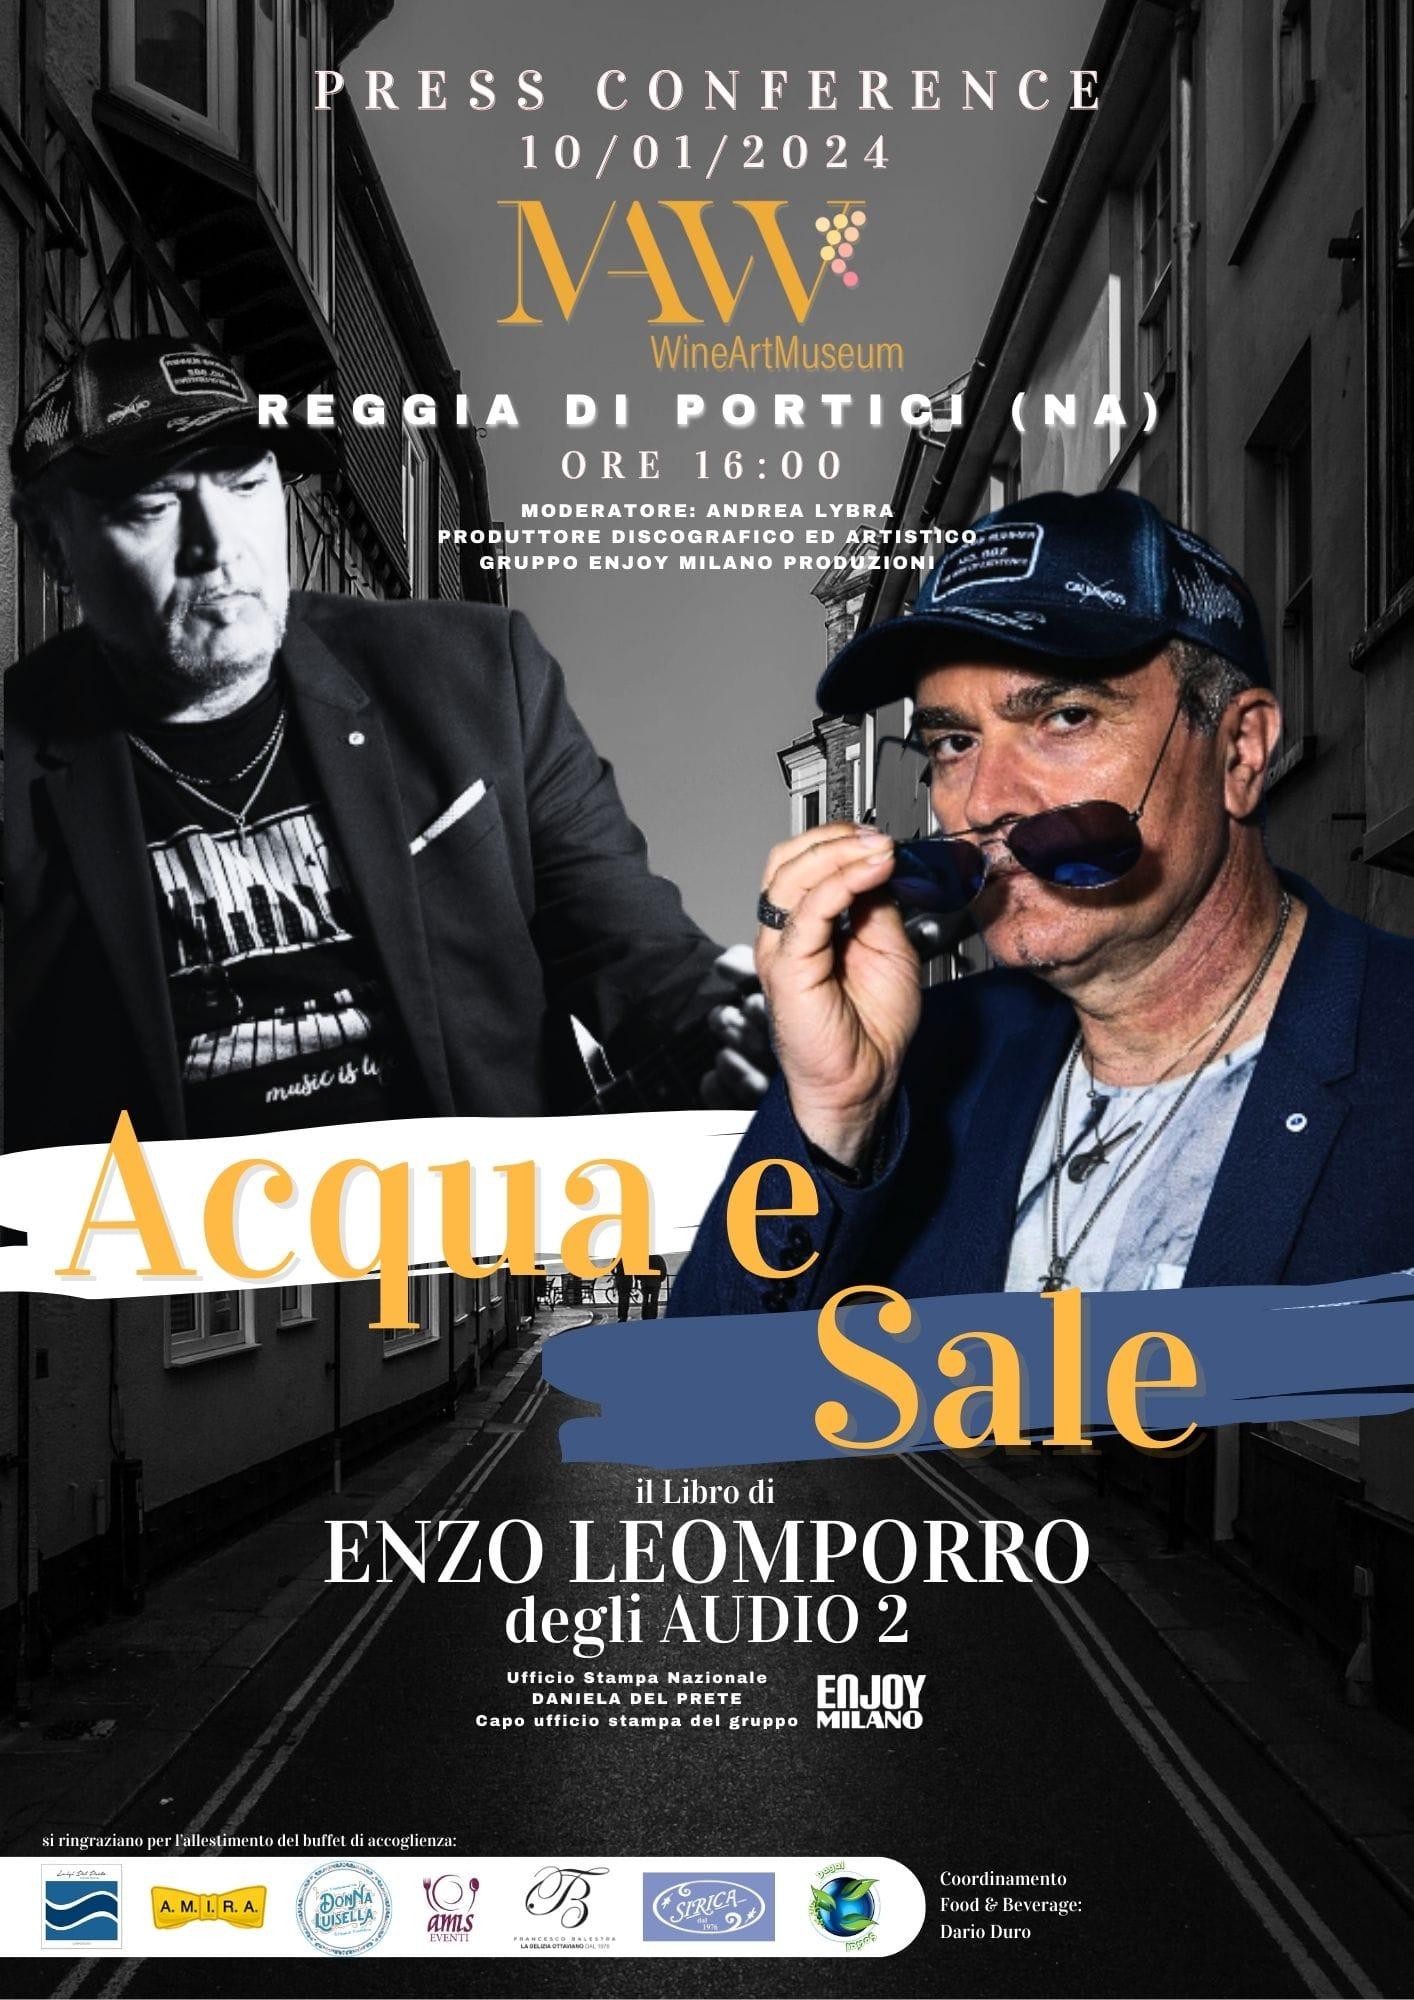 Presentazione del libro “Acqua e Sale” di Enzo Leomporro degli Audio2 al Mavv Wine art Museum| Reggia di Portici